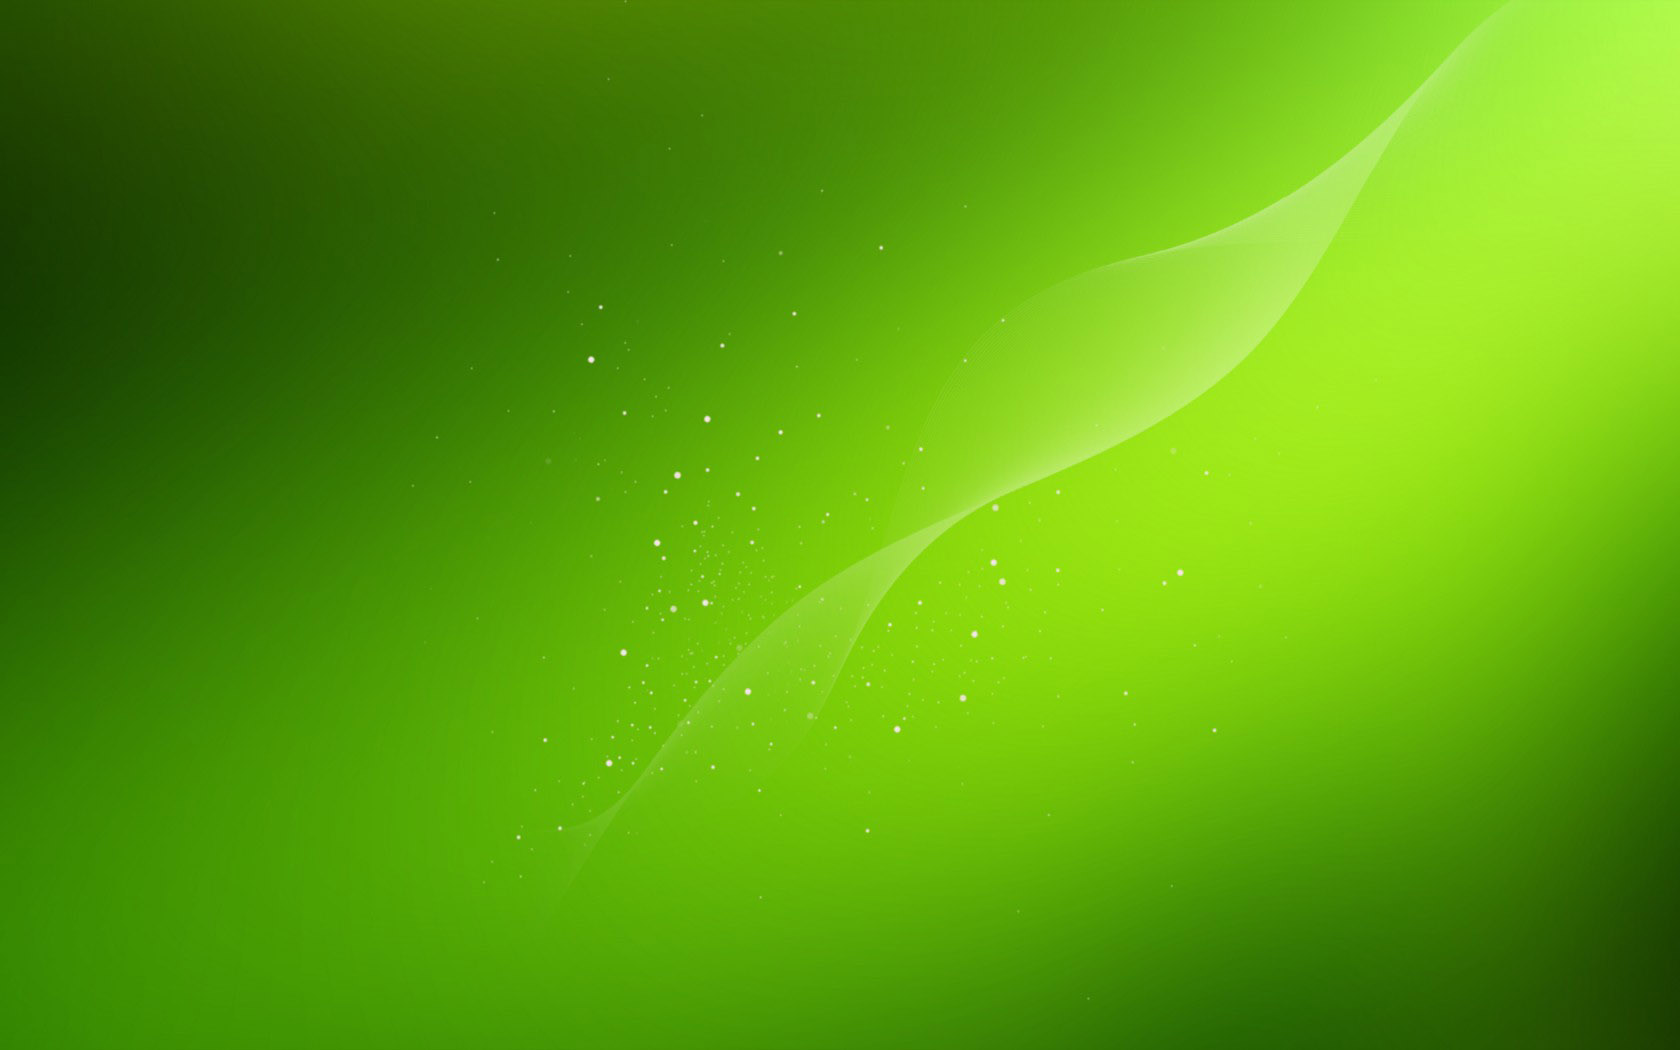 Exquisite green fresh desktop wallpaper